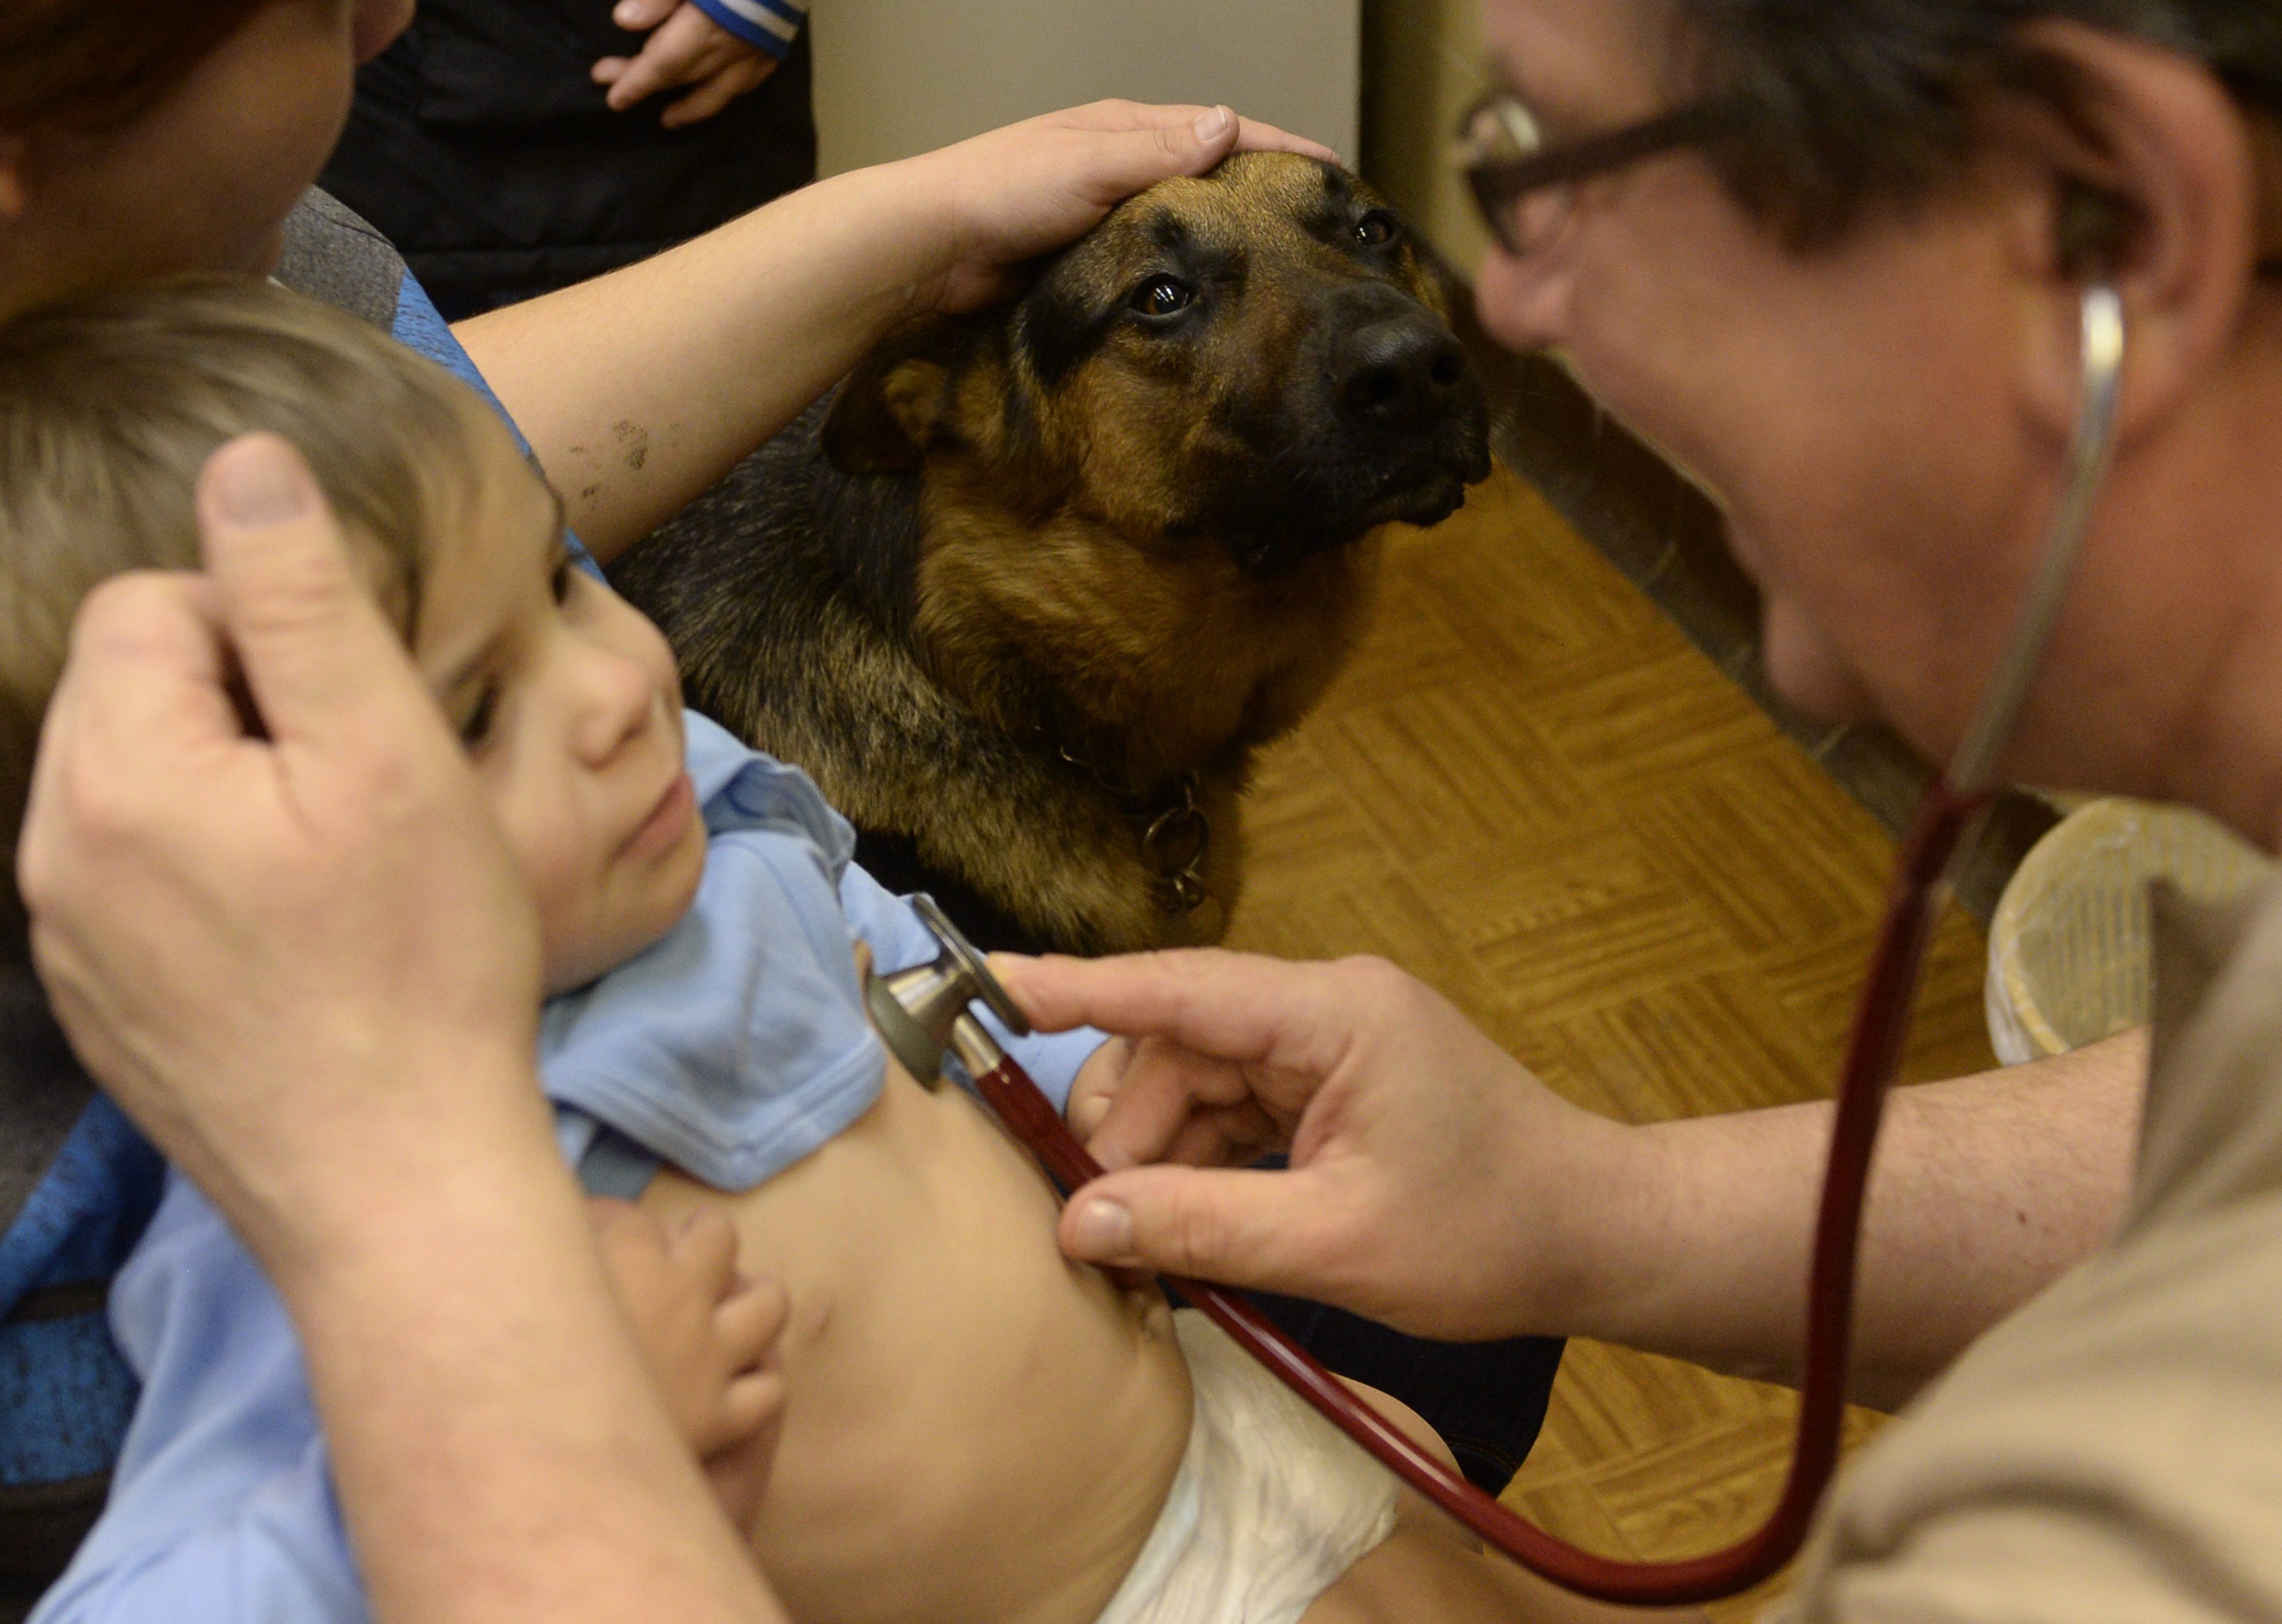 A kormányhivatal kitiltotta a terápiás kutyát az orvosi rendelőből